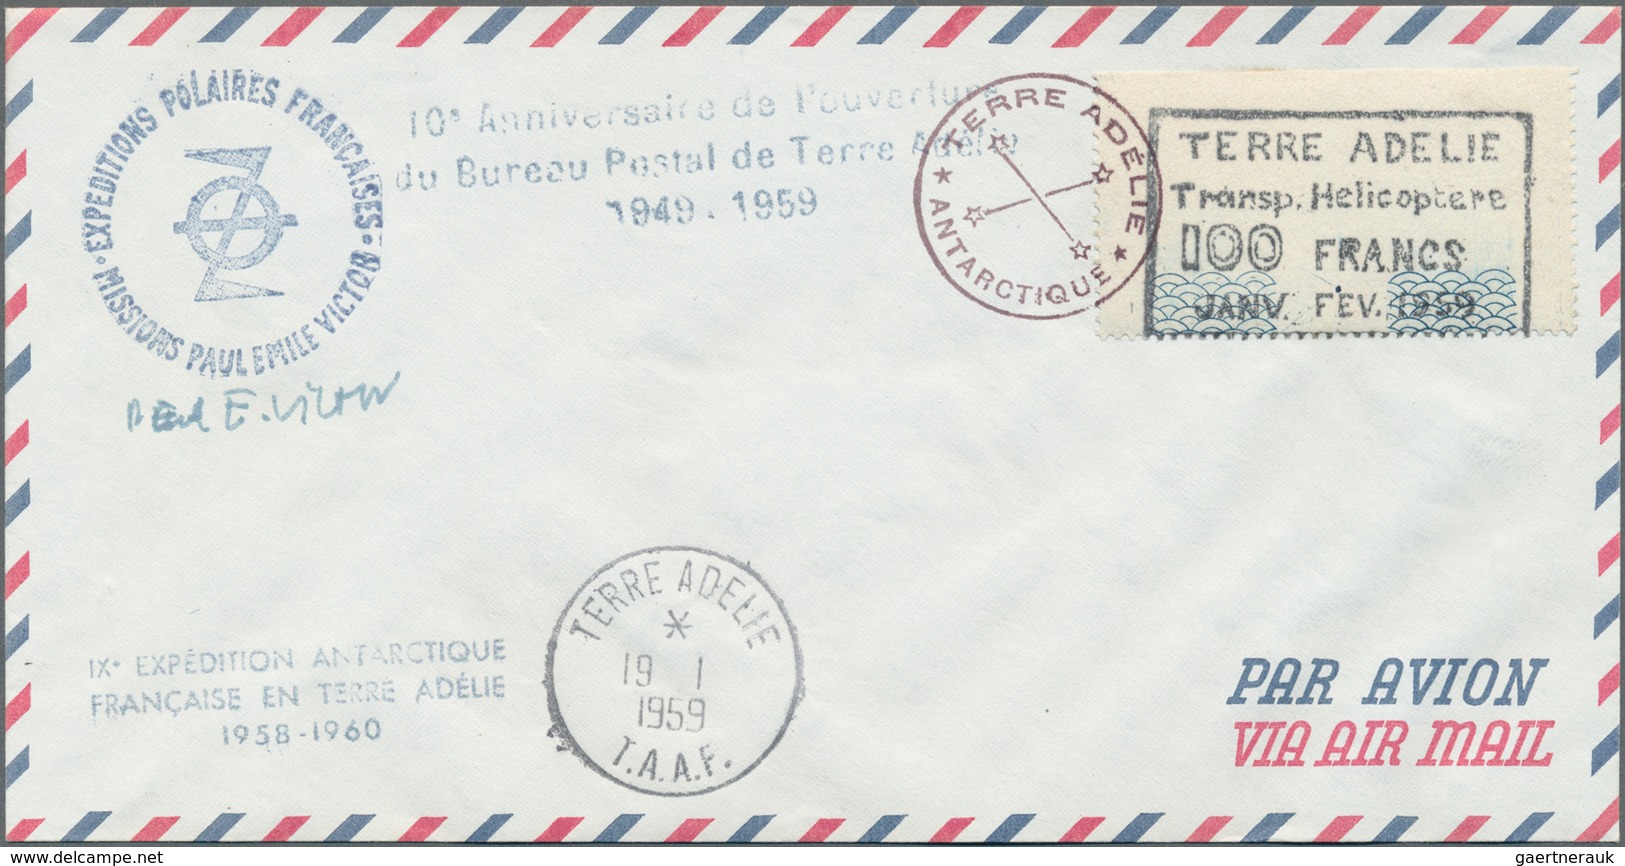 Französische Gebiete In Der Antarktis: 1959, Flight Vignette "Terre Adelie Transp. Helicoptere" 100 - Lettres & Documents